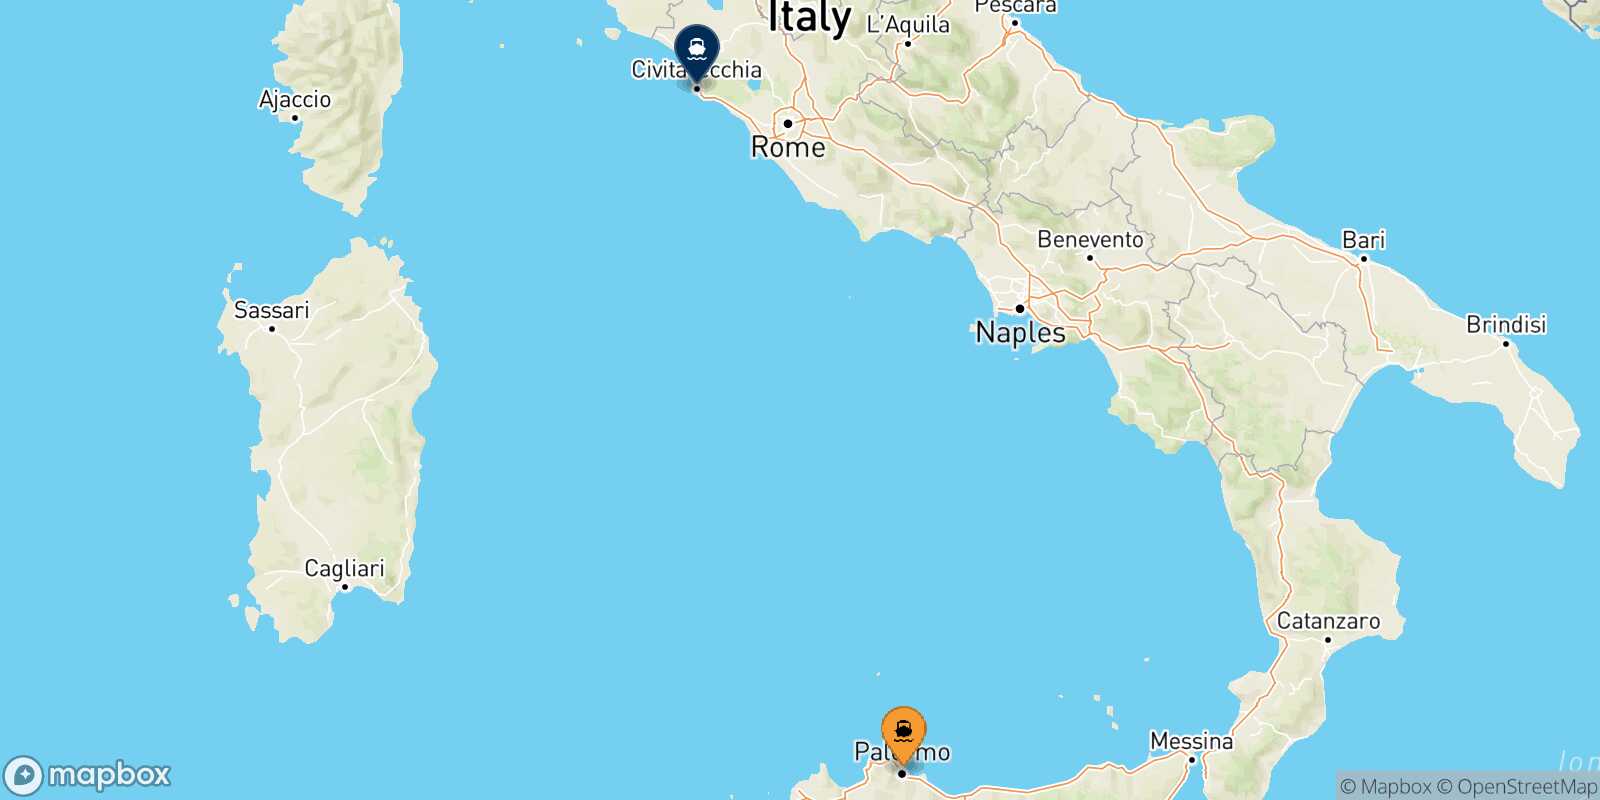 Palermo Civitavecchia route map